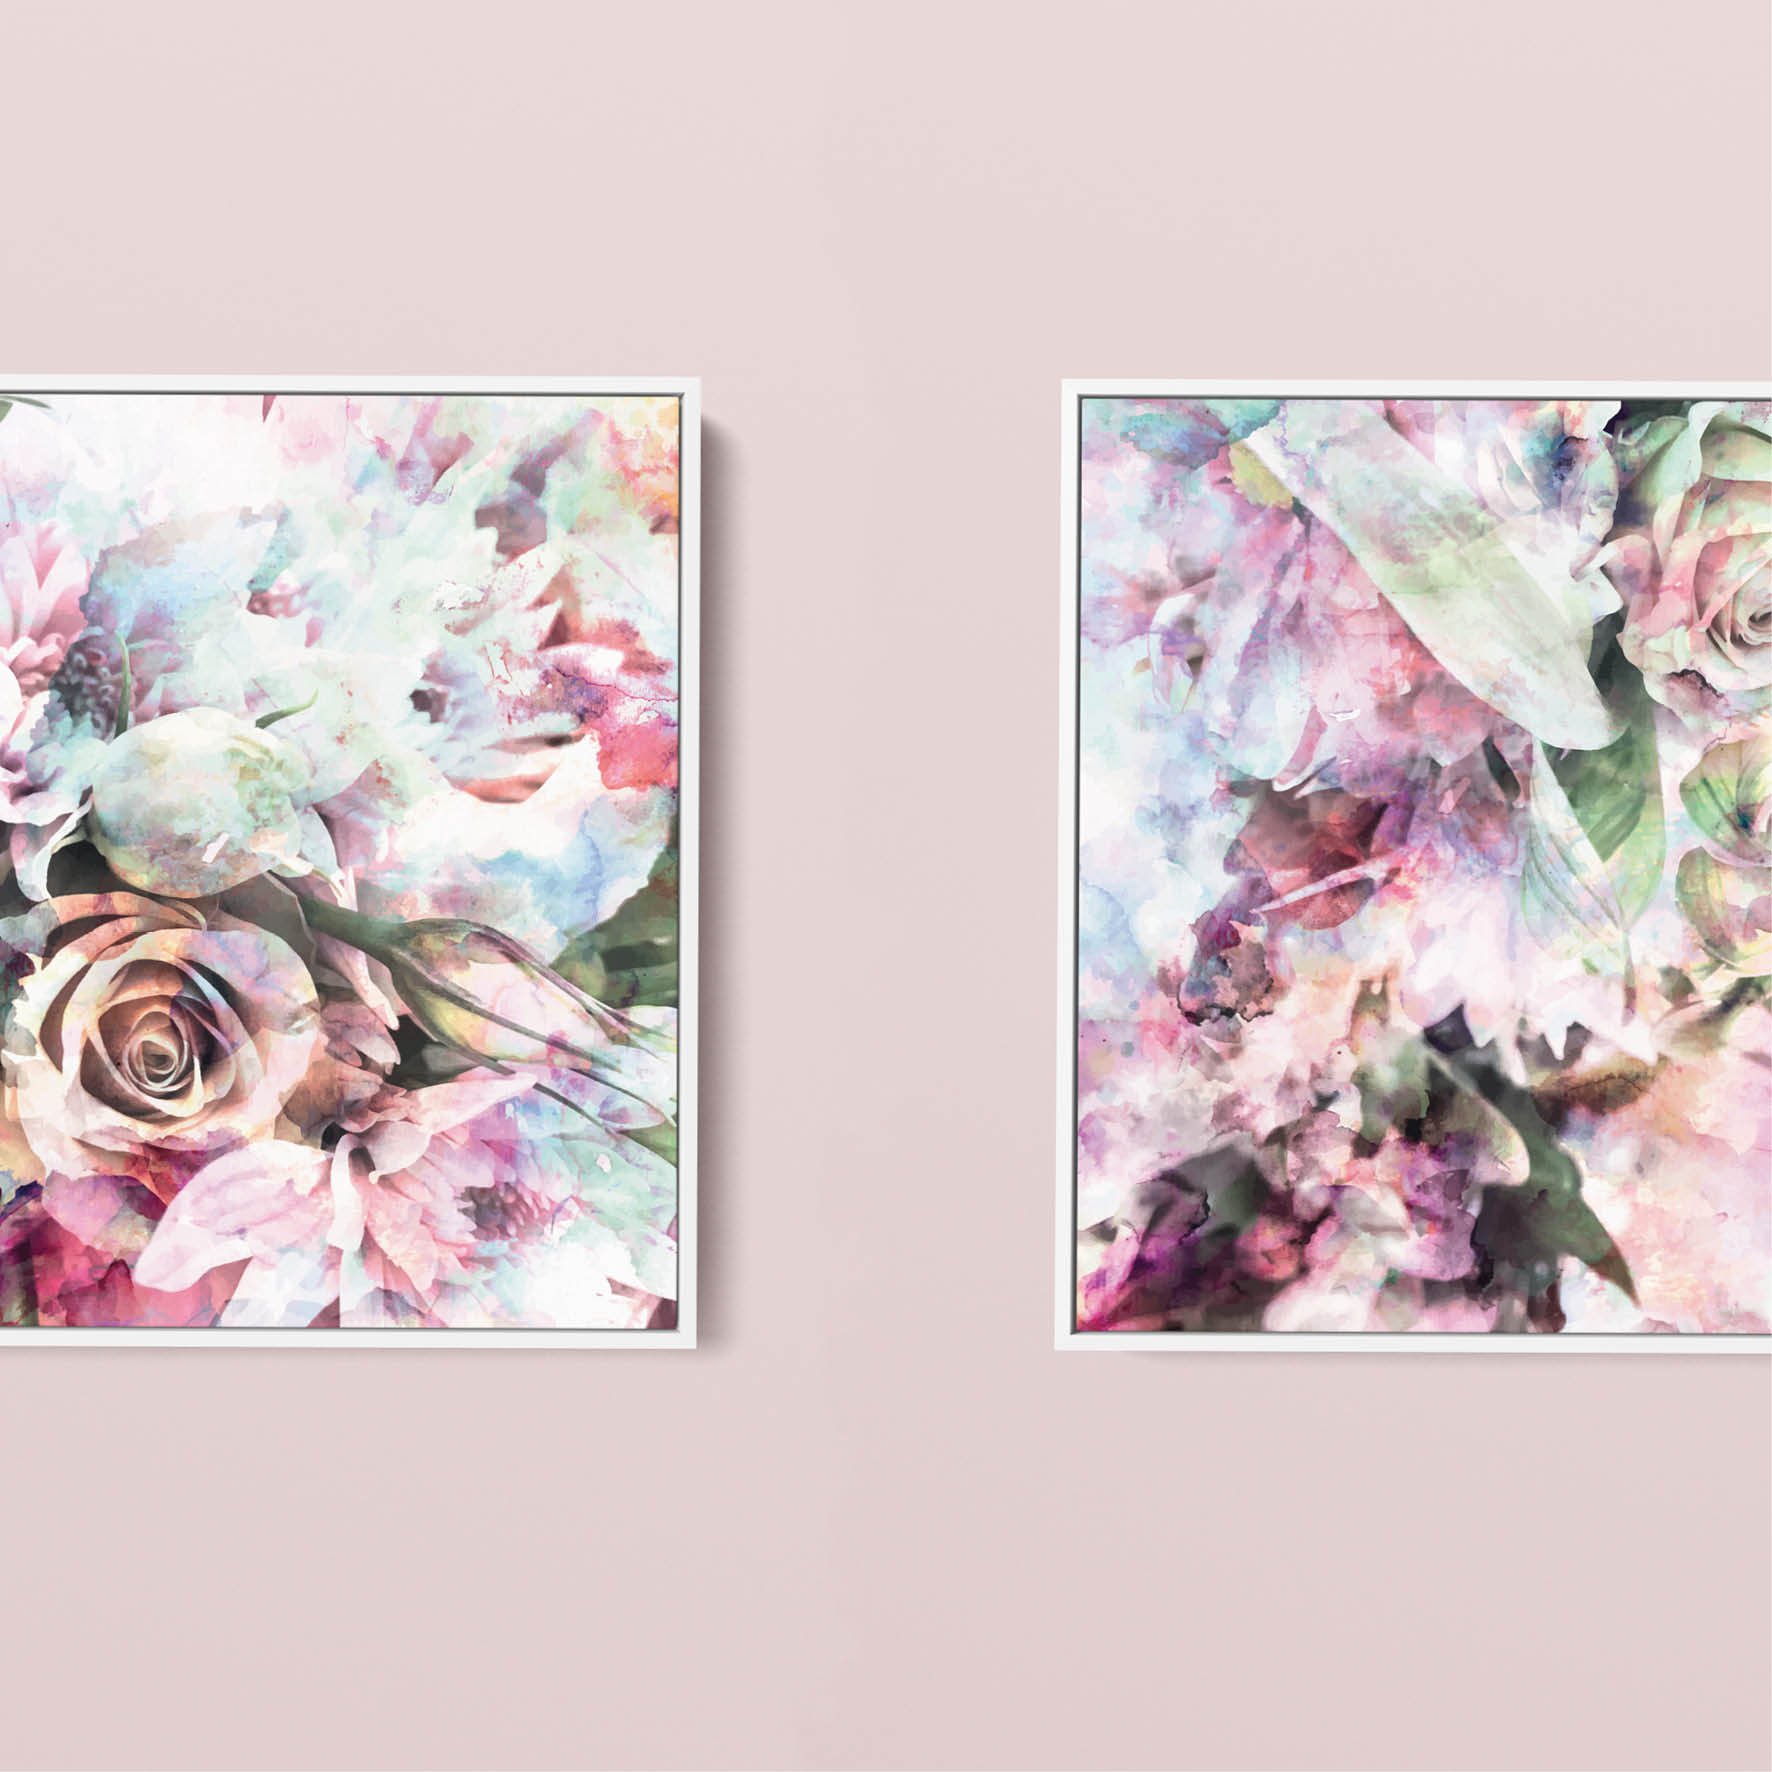 april-may-artwork-pair-rose.jpg